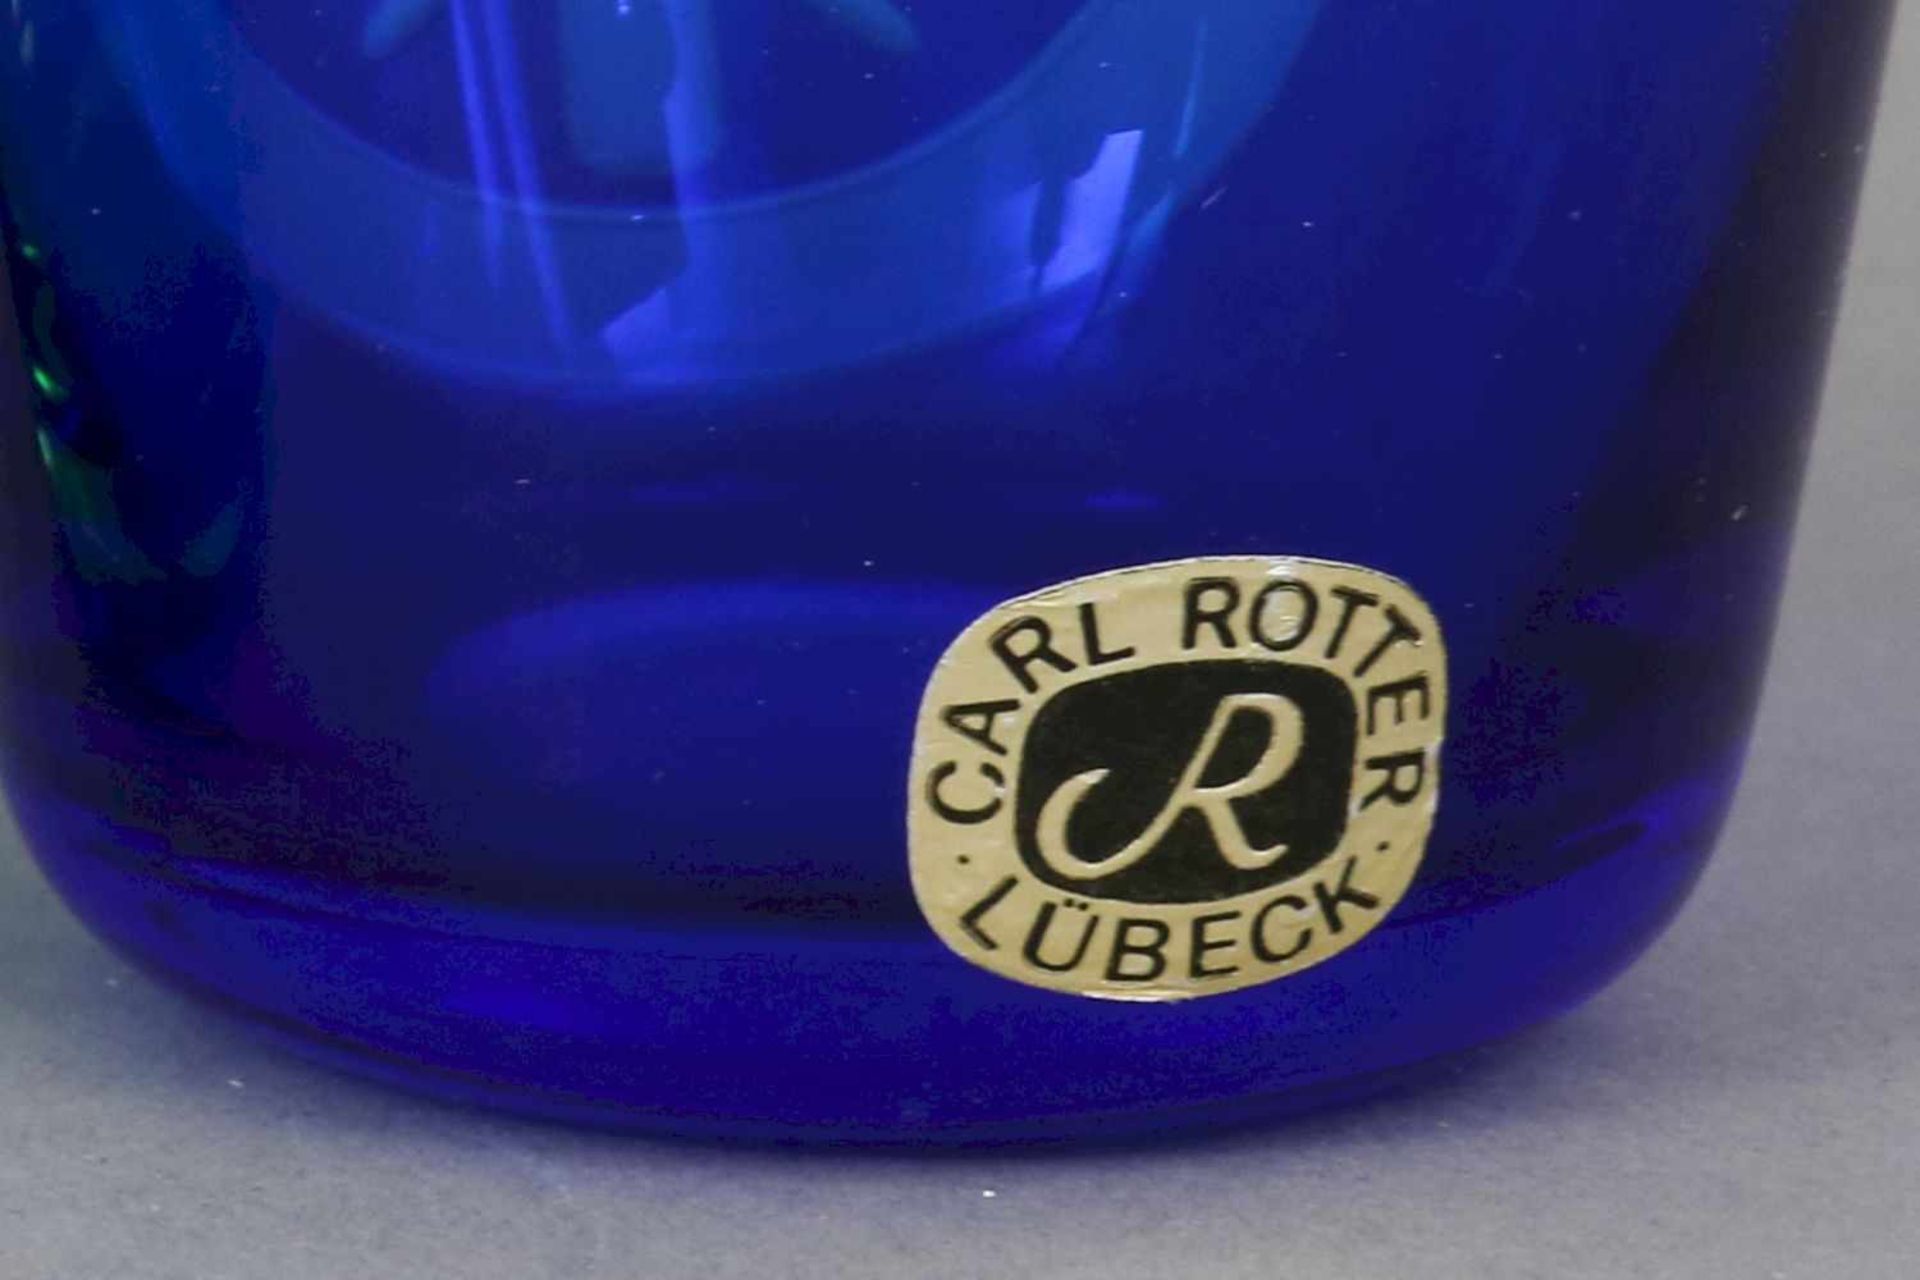 2 CARL ROTTER (Lübeck) Gläser1 blaues und 1 grünes Trinkglas mit geschliffenem Freimaurer-Dekor ¨ - Bild 3 aus 4